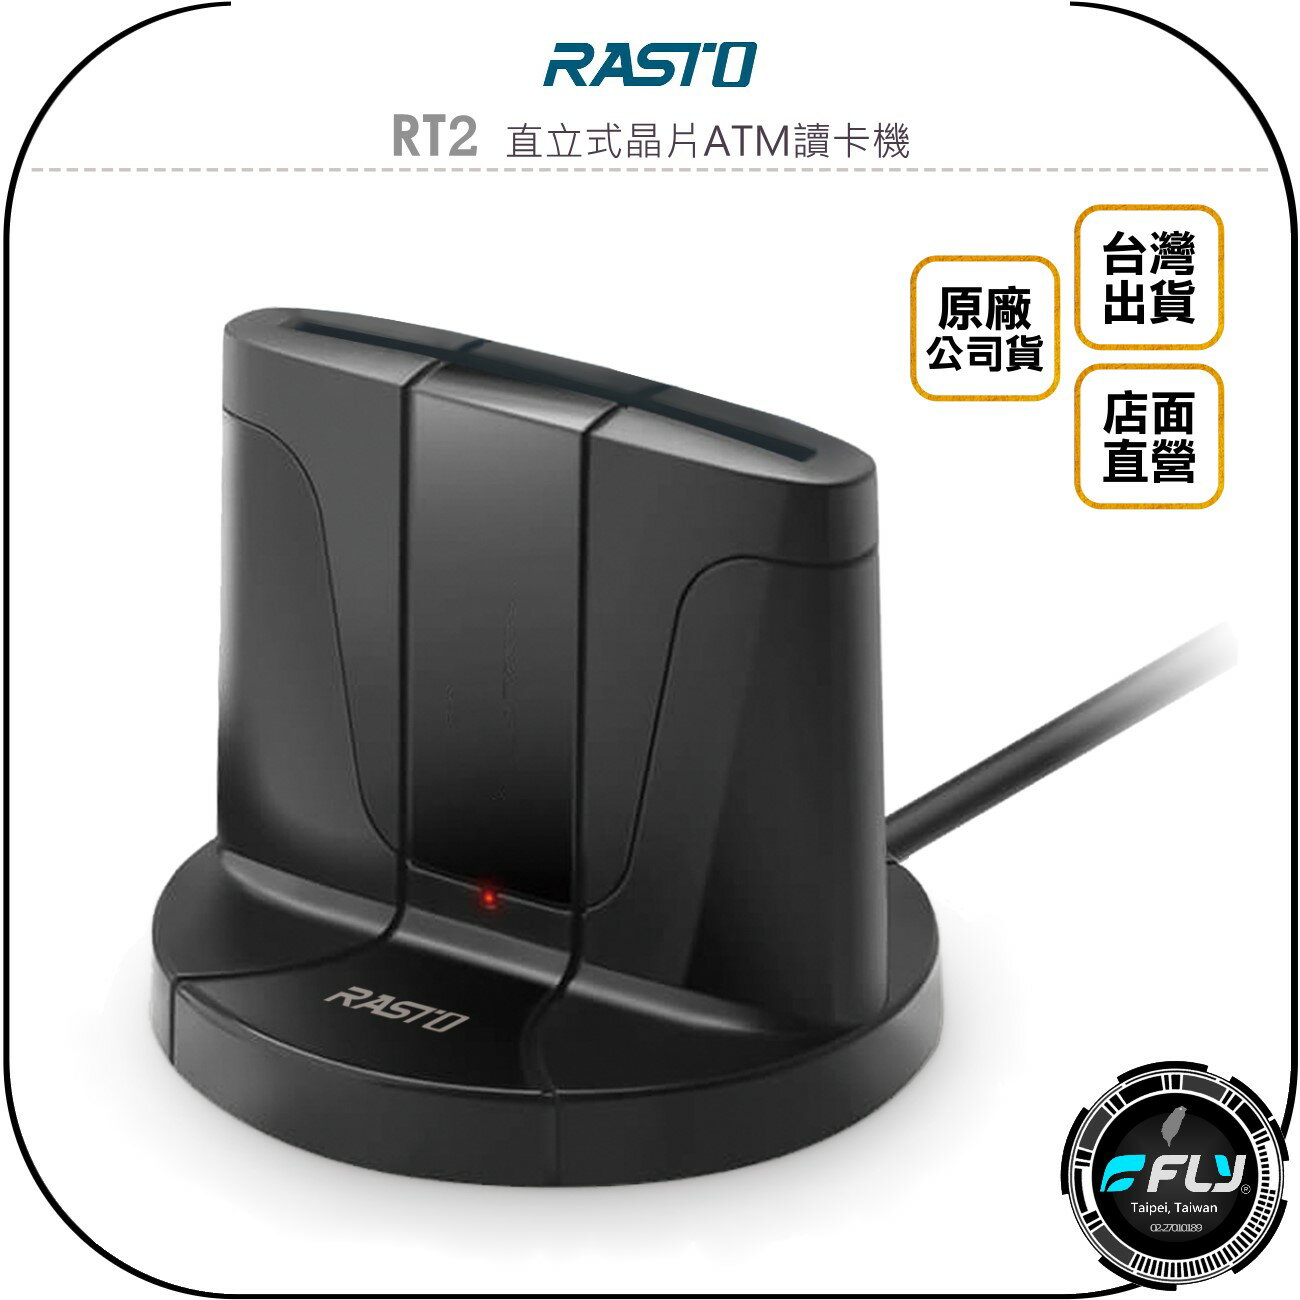 《飛翔無線3C》RASTO RT2 直立式晶片ATM讀卡機◉公司貨◉網路ATM連接◉記憶卡讀取◉電子錢包查詢